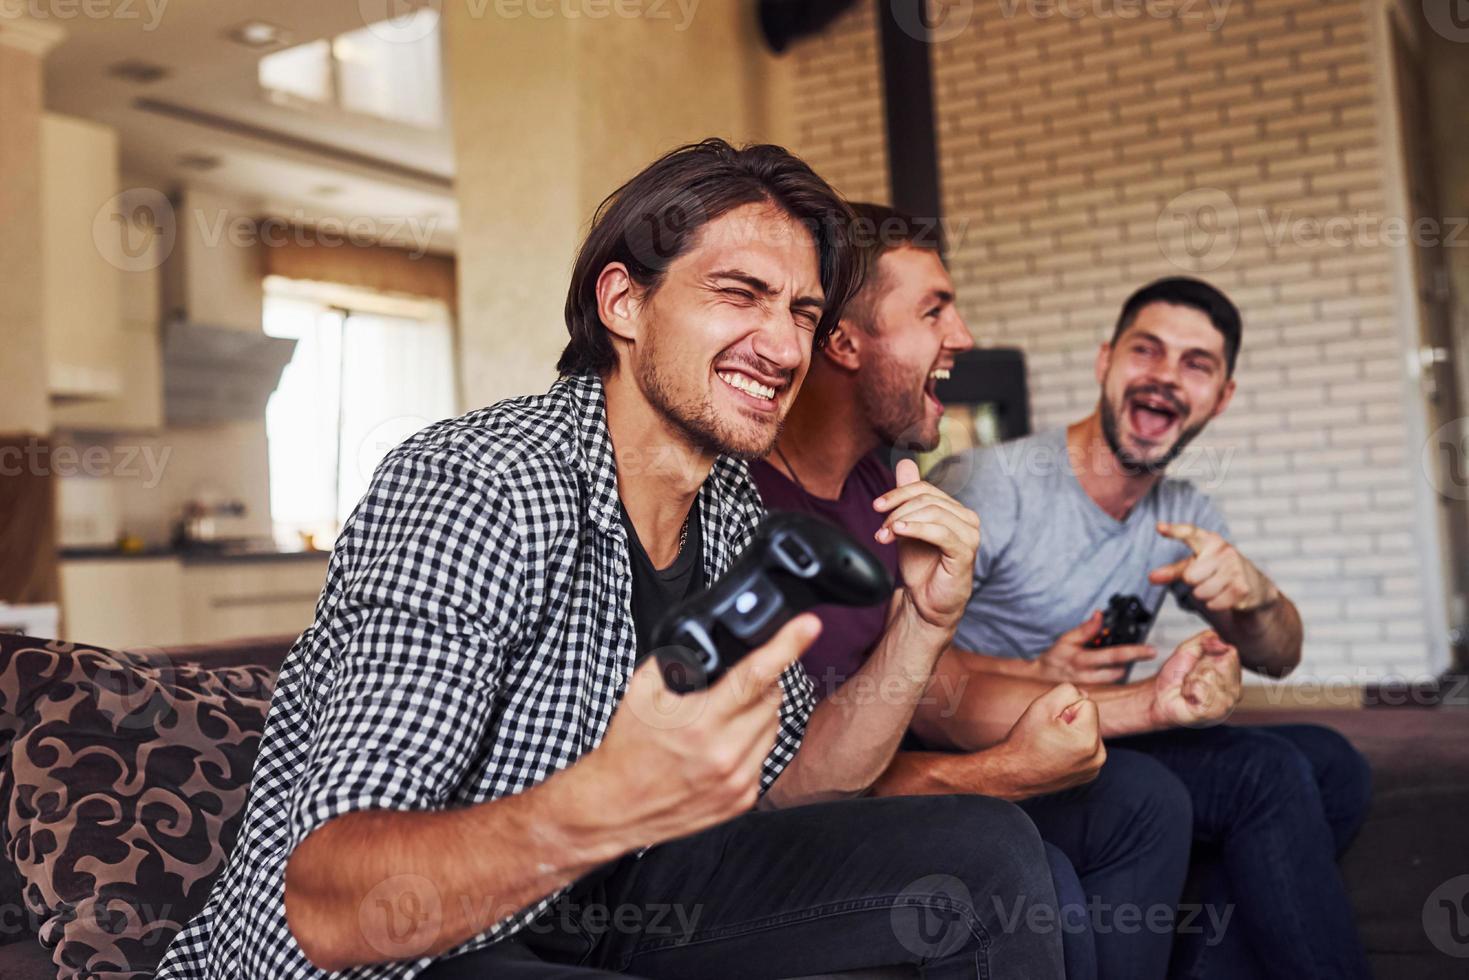 un groupe d'amis s'amuse à jouer à un jeu de console à l'intérieur dans le salon photo